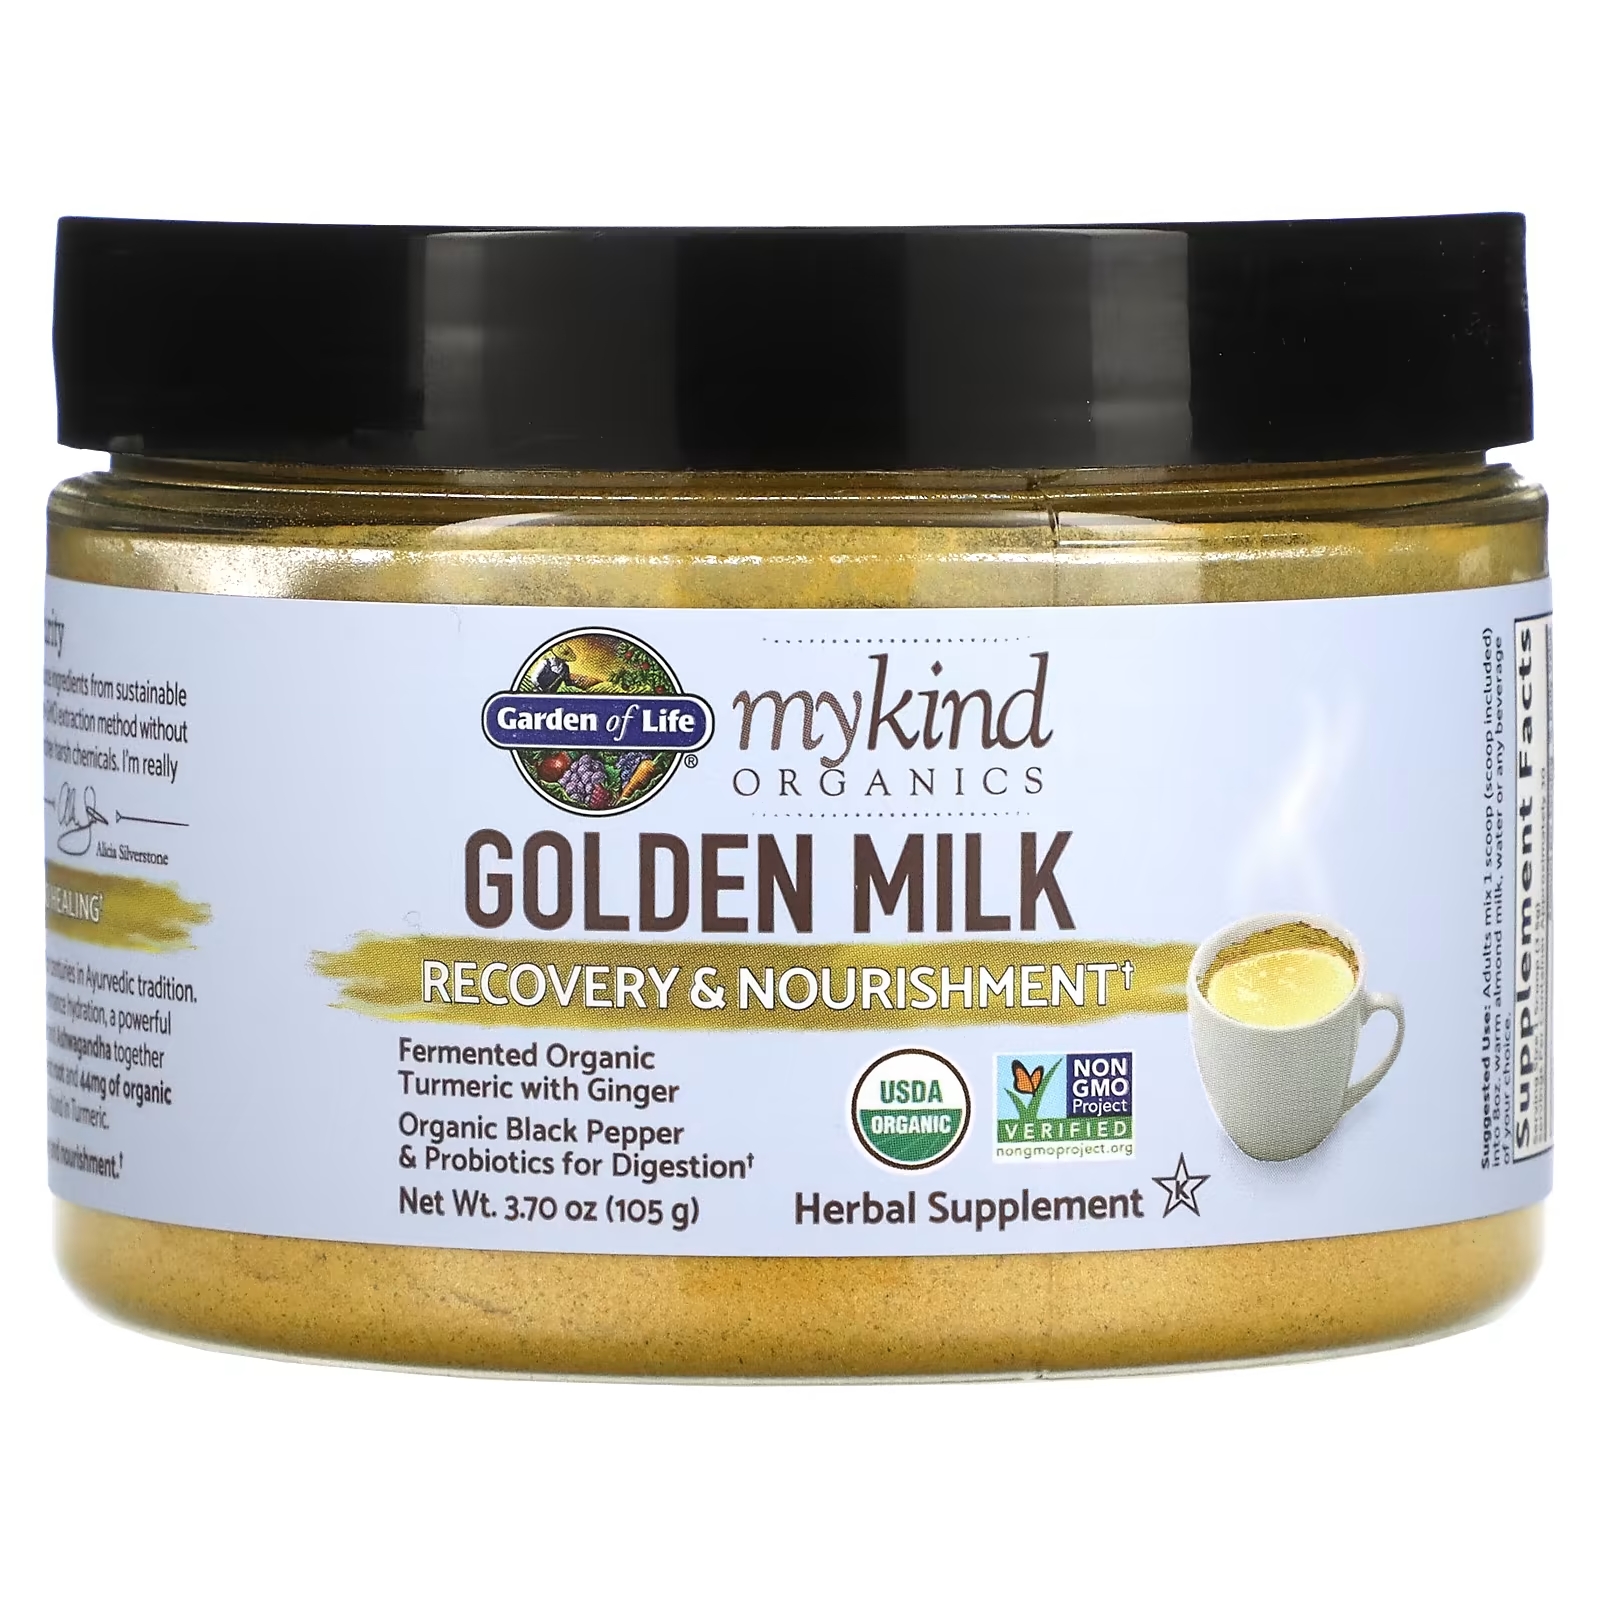 цена Золотое Молоко - Восстановление и Питание Garden of Life MyKind Organics, 105 г